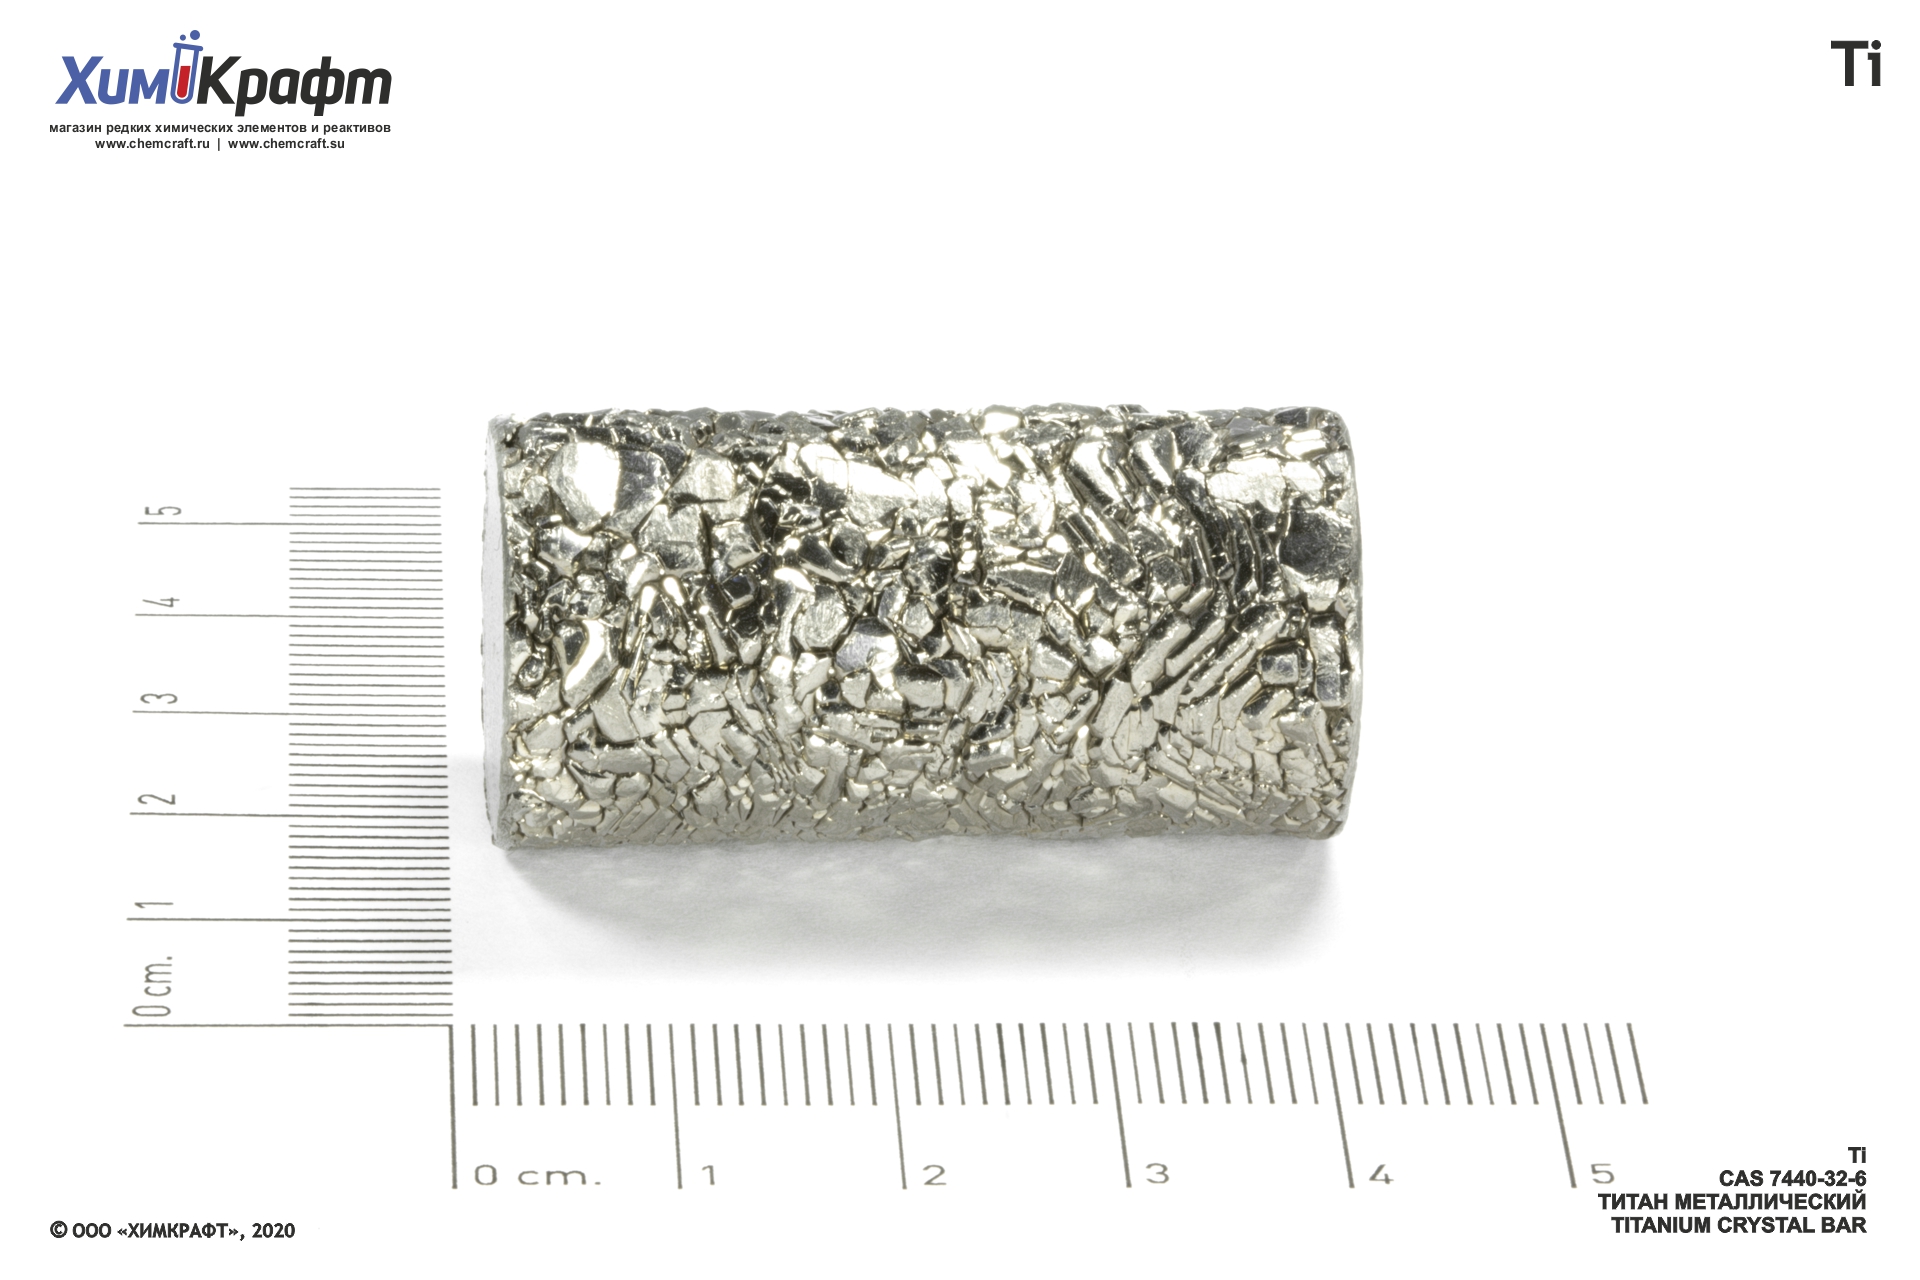 Титан металл курск. Запах титана металла. Титан металл белый цилиндр 130 мм. Совместимость металлов Титан. Спецэффект метал Титан 41.